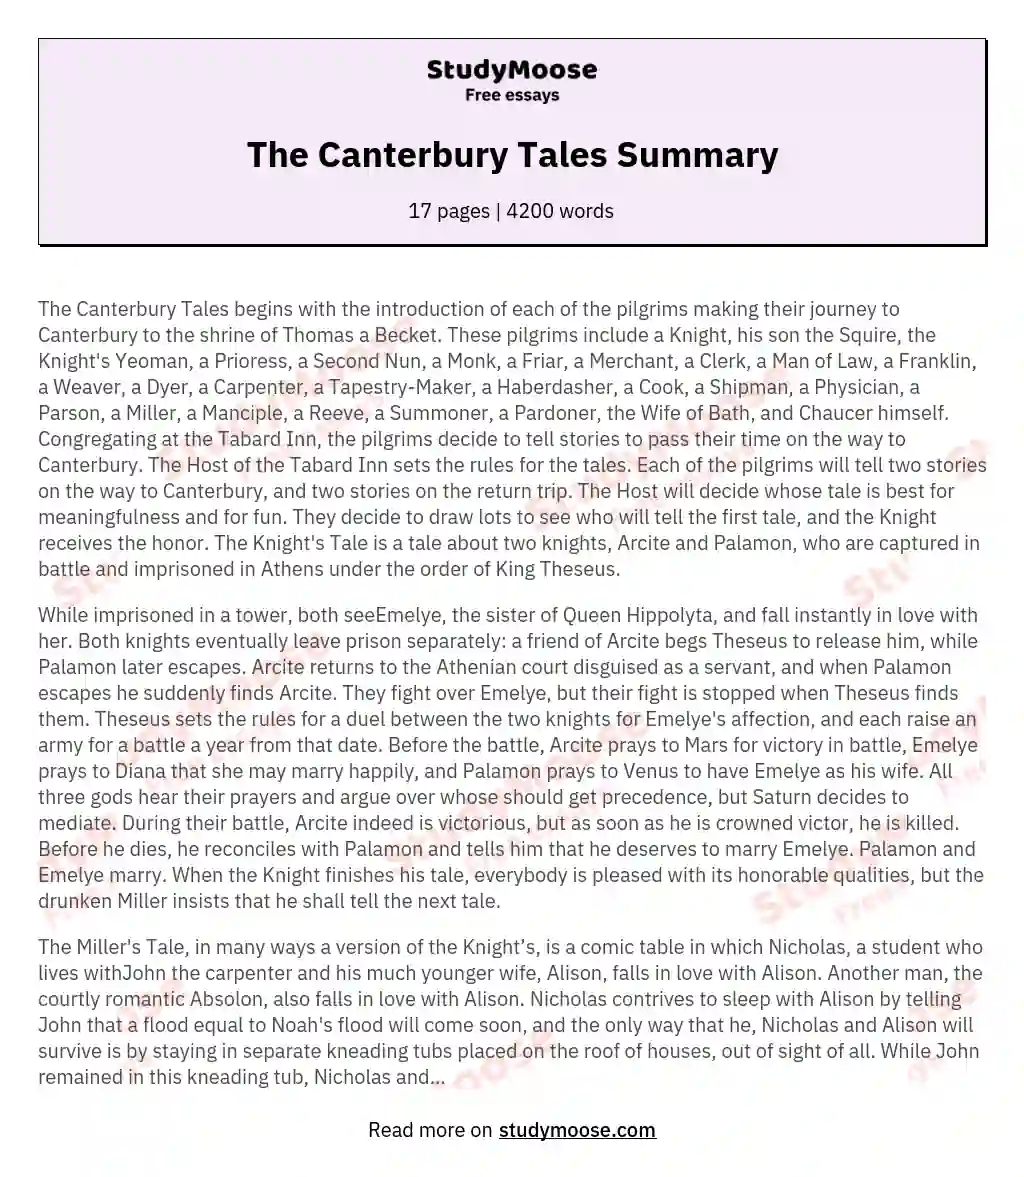 The Canterbury Tales Summary essay